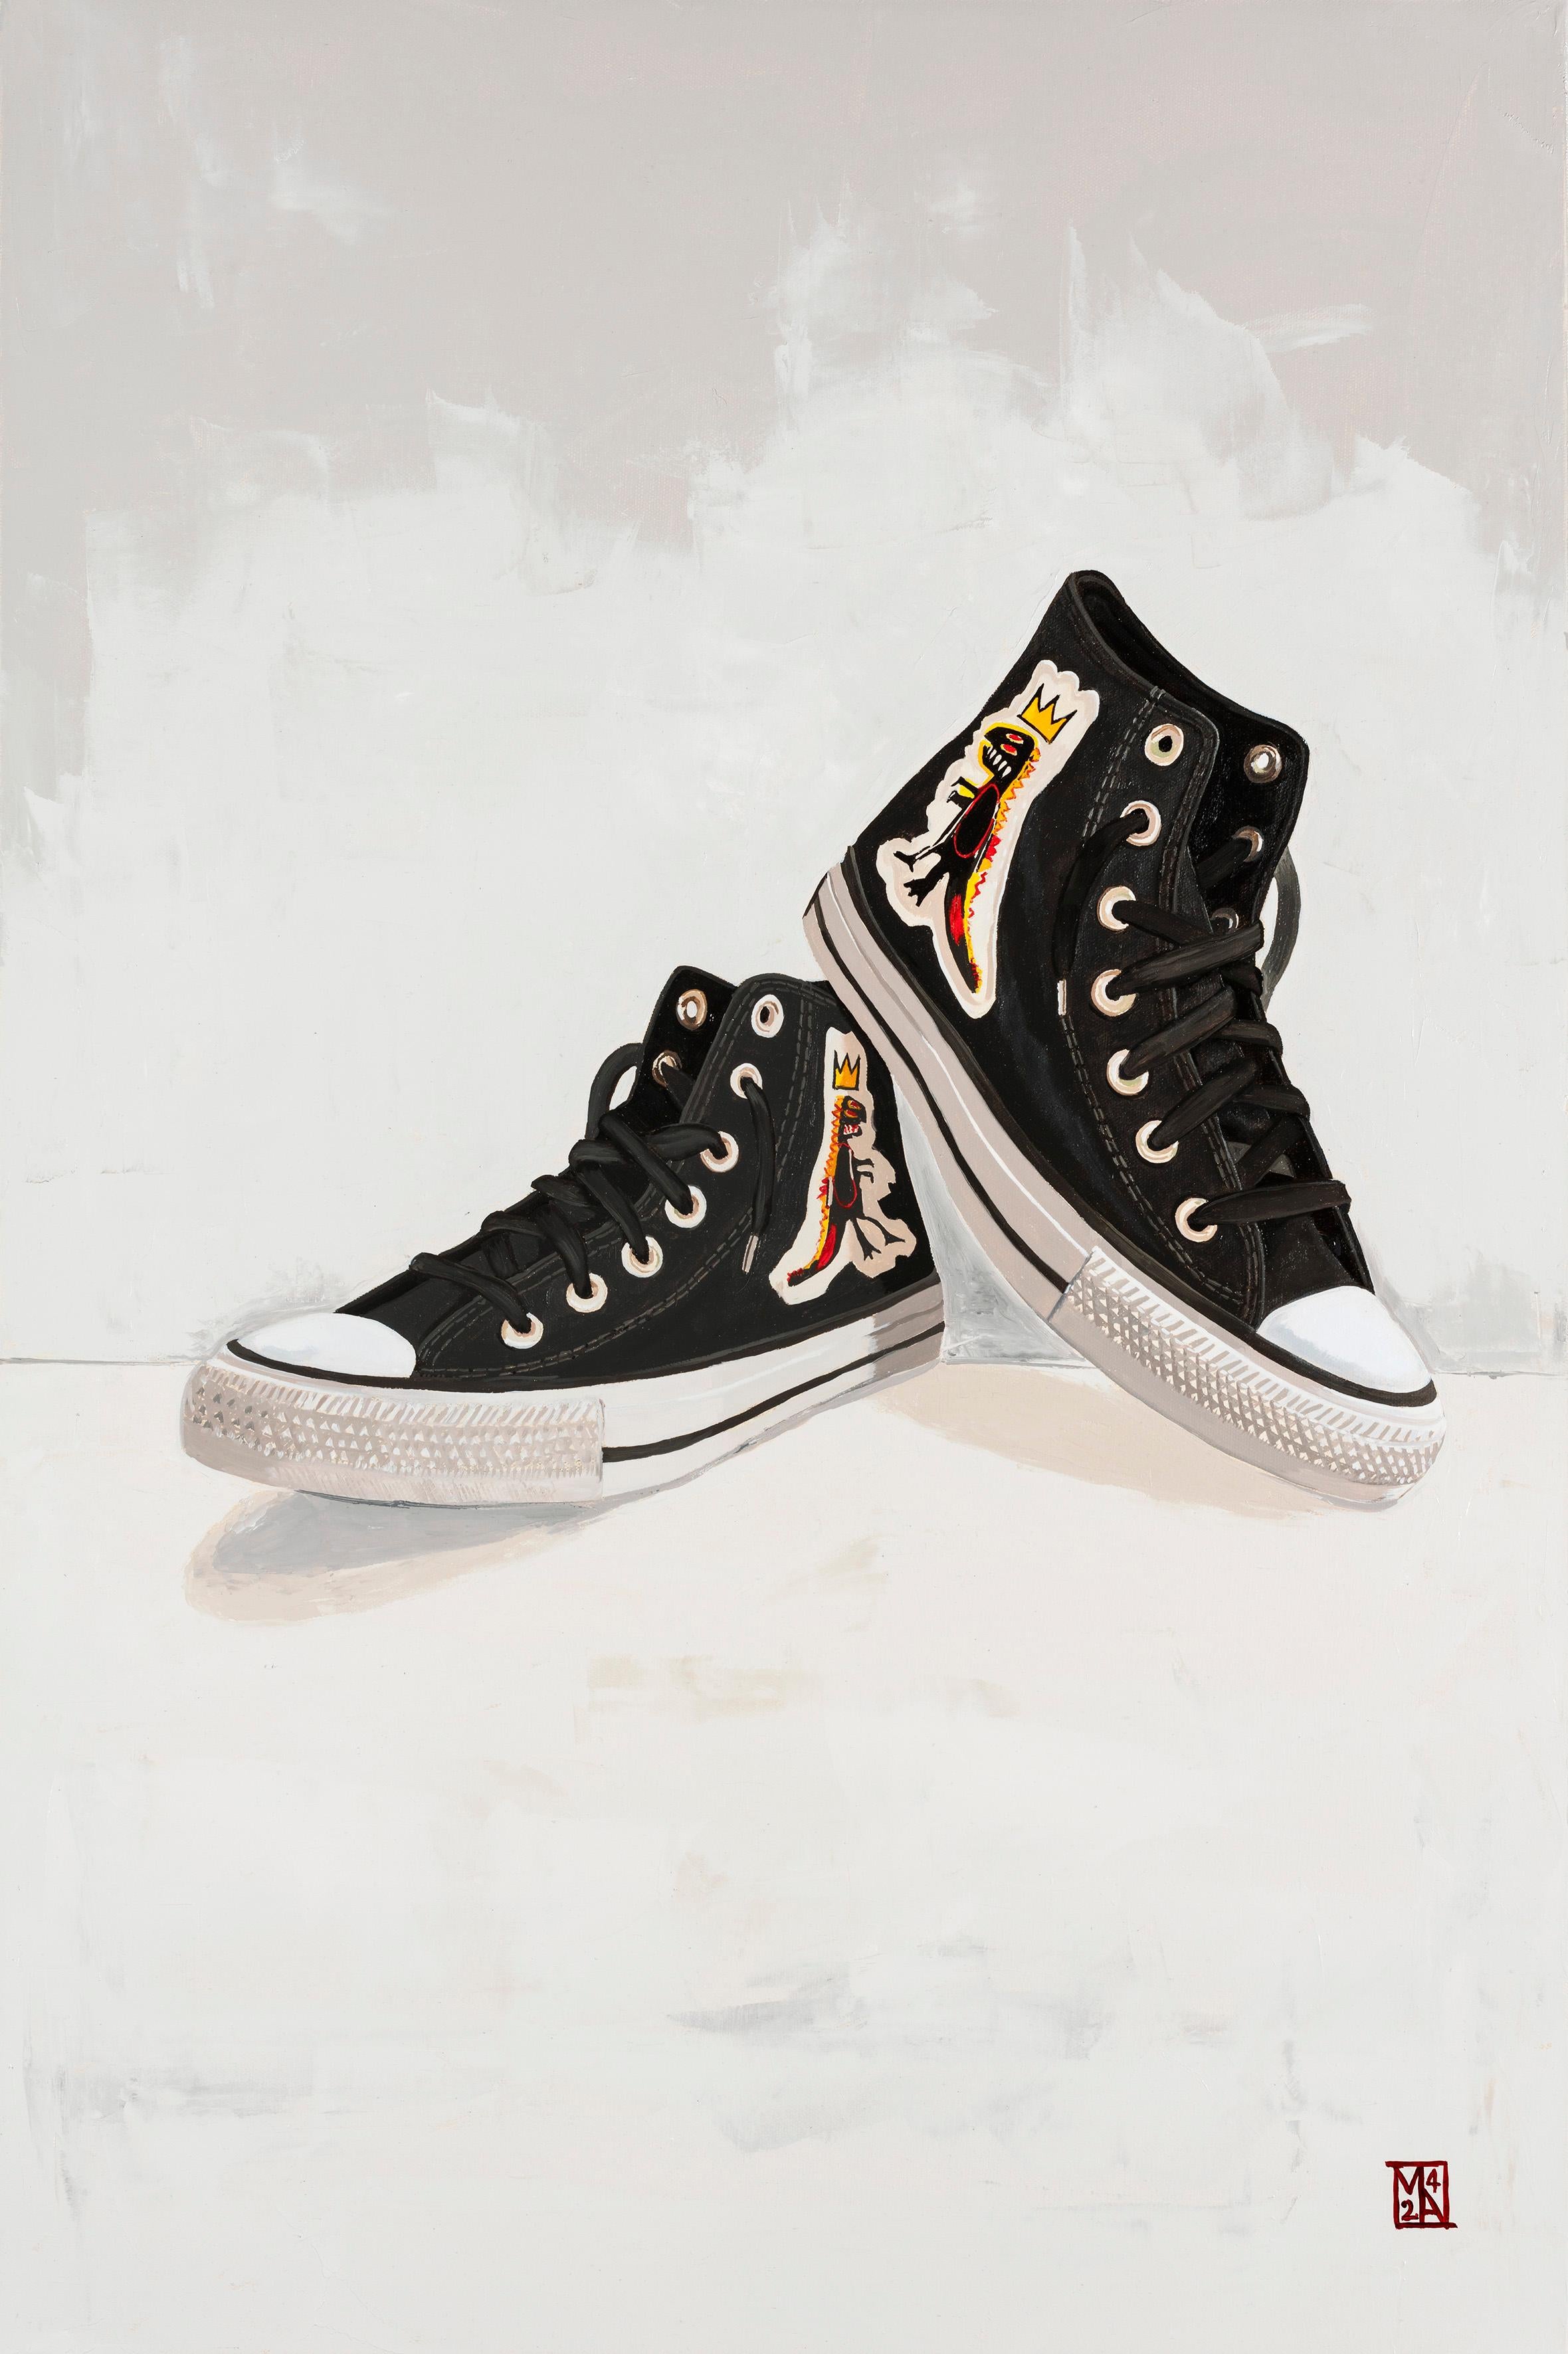 Basquiat Convers Sneakers Art of Vintage by Martin Allen - La culture pop iconique rencontre le vintage